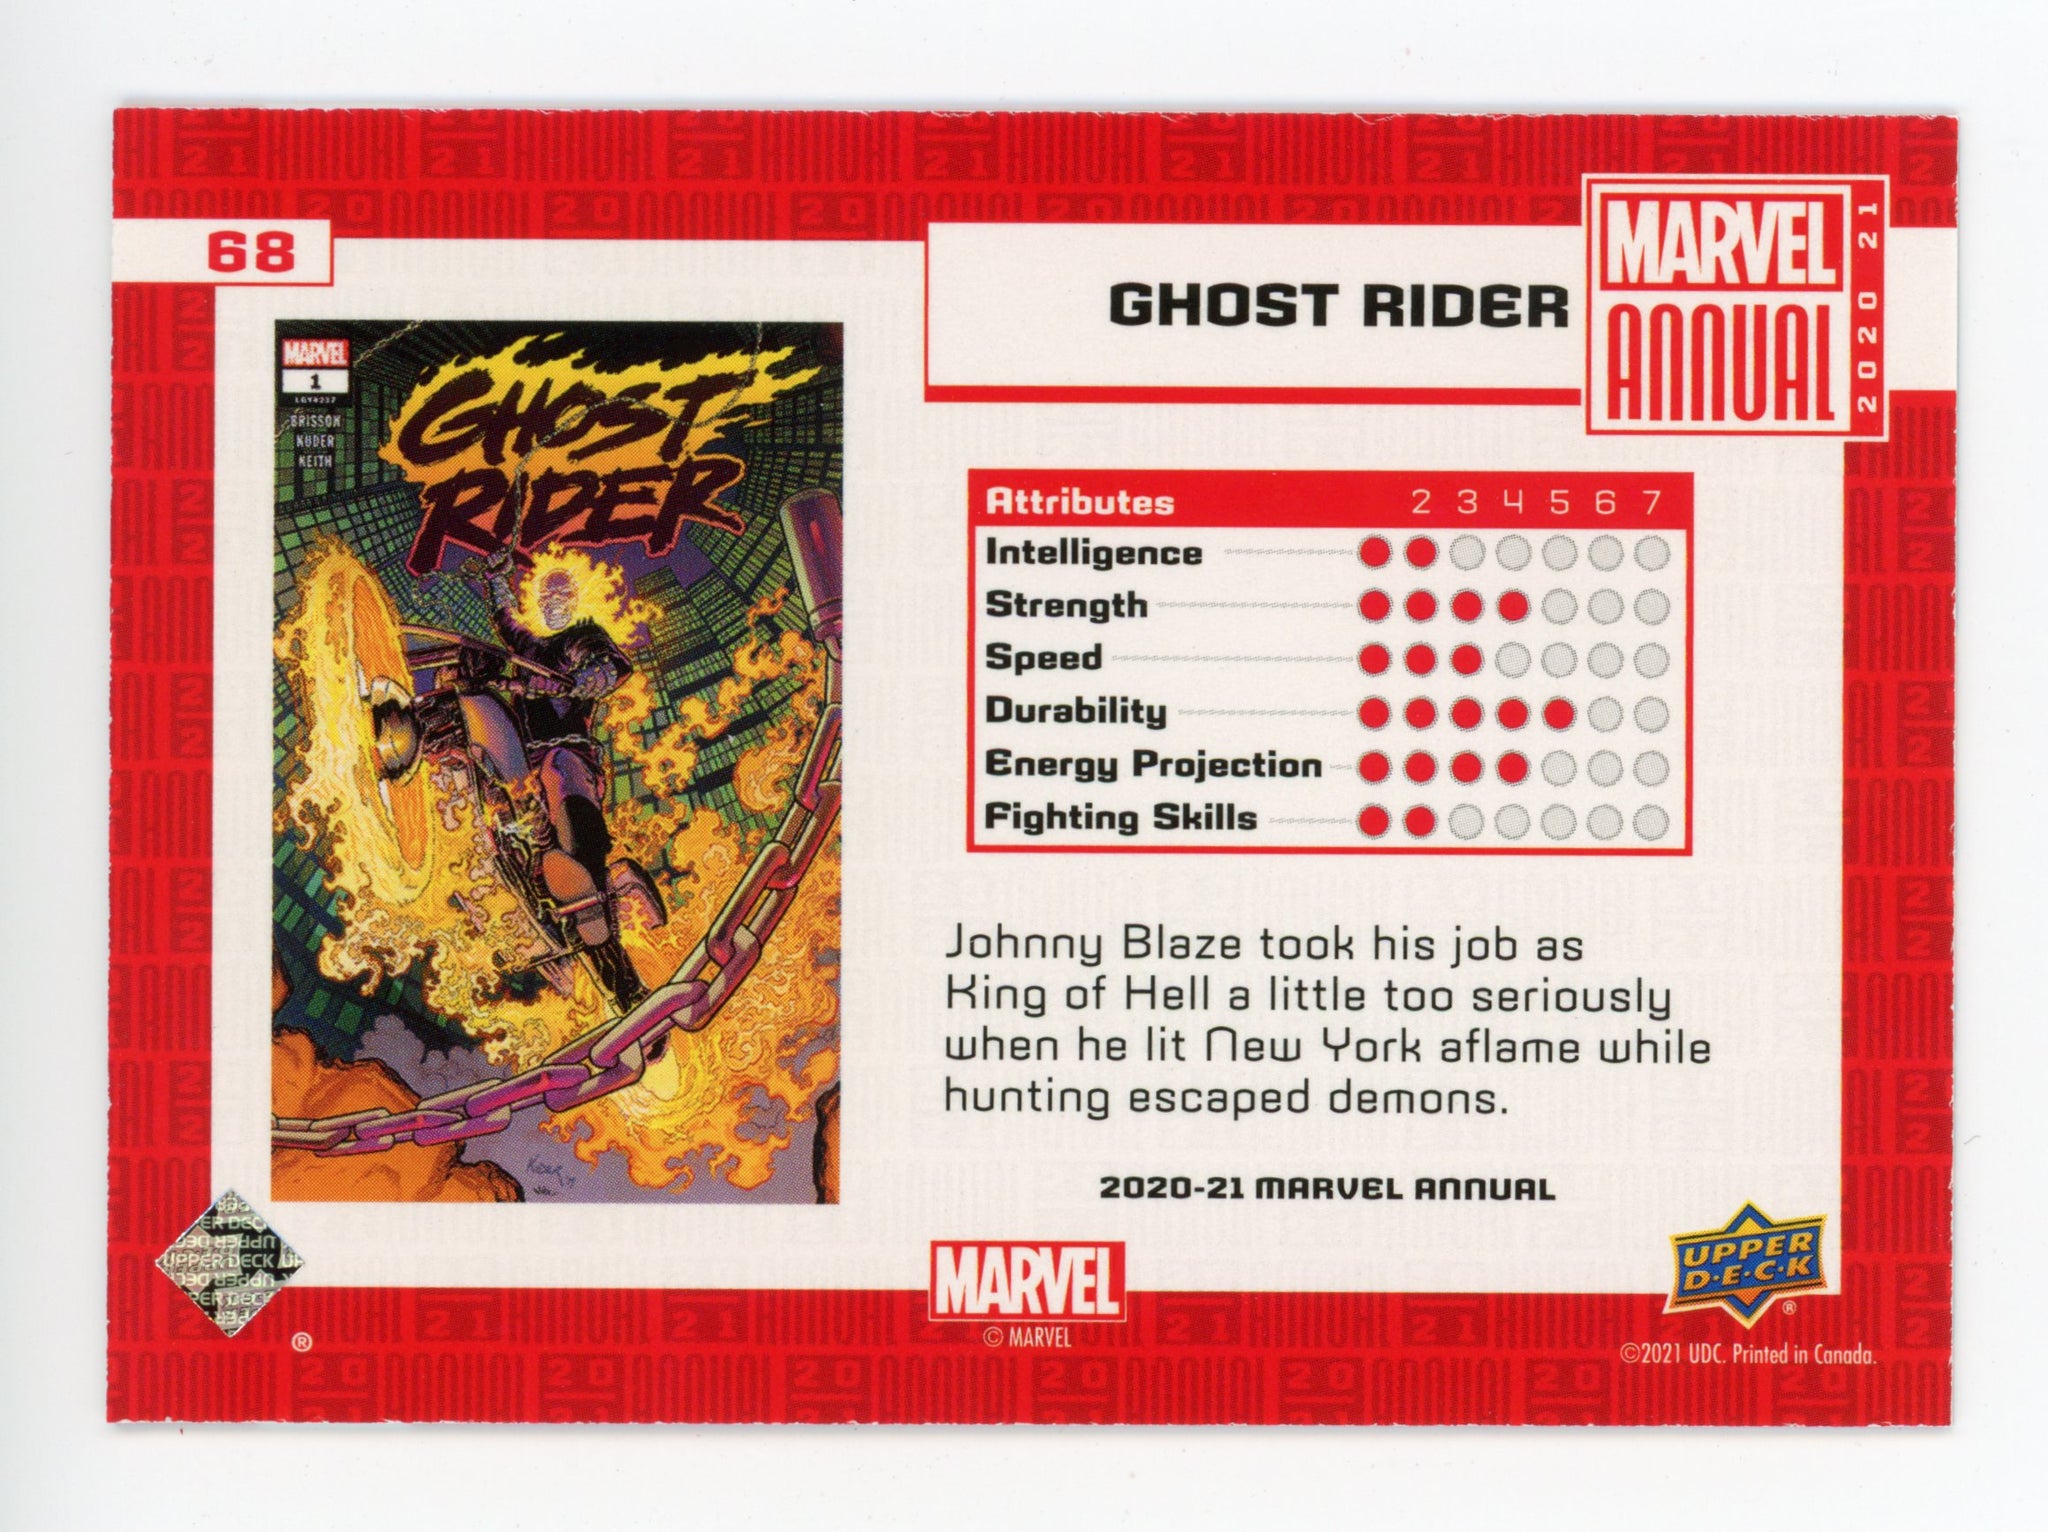 2020-2021 Ghost Rider Variant Tier 2 Upper Deck Marvel Annual # 68